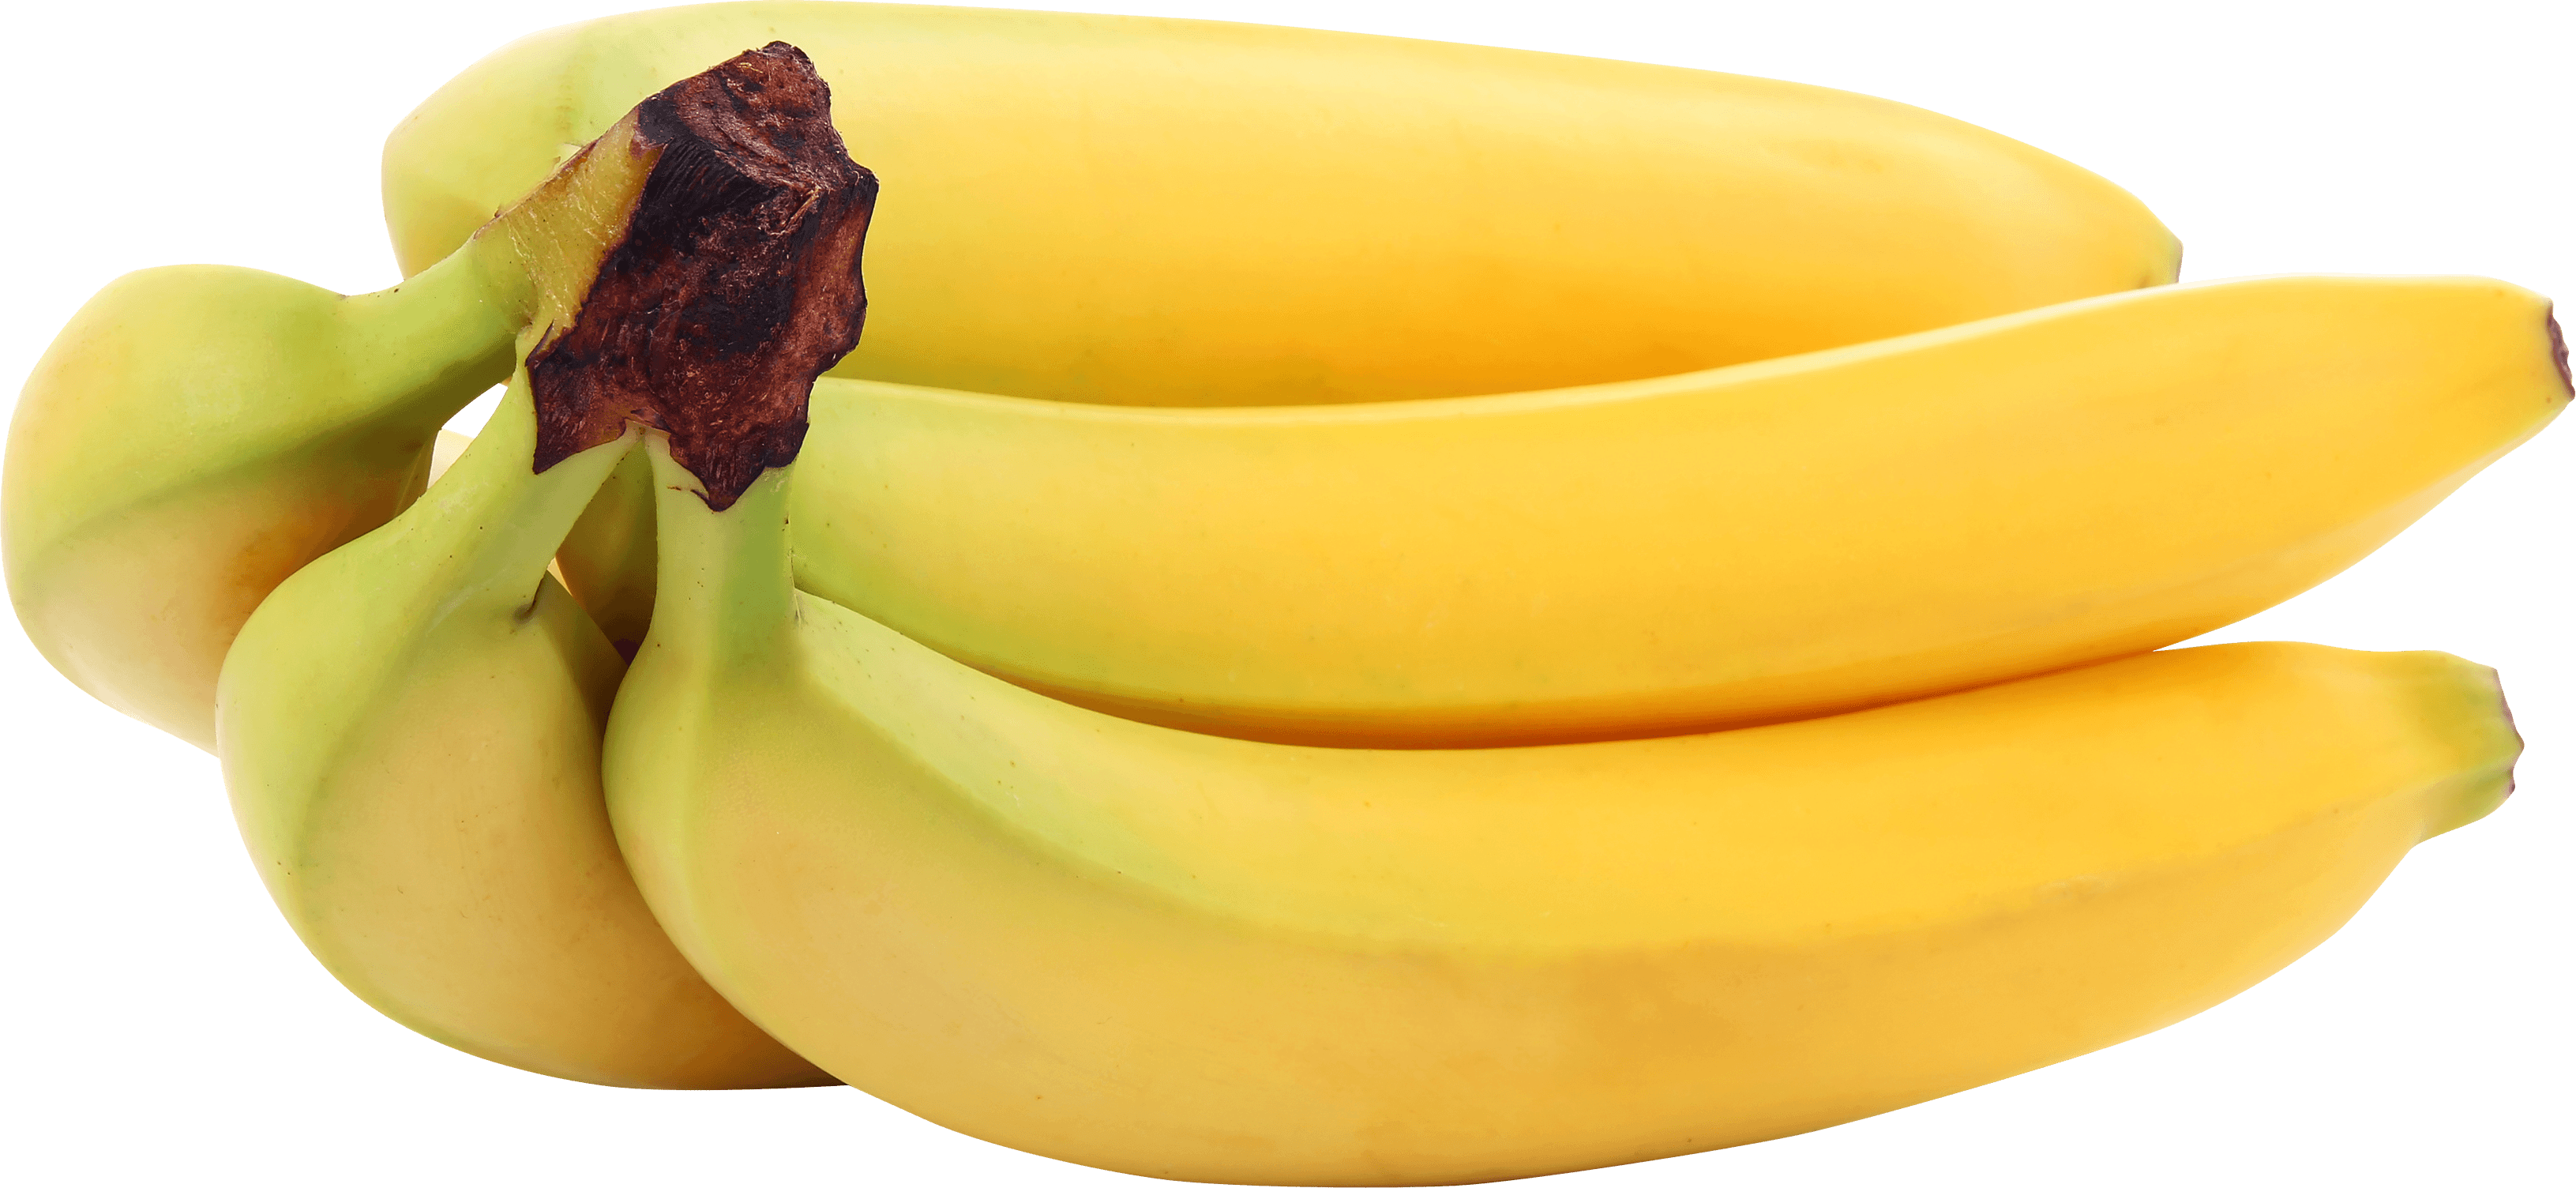 Banana Png Image PNG Image, Banana PNG - Free PNG